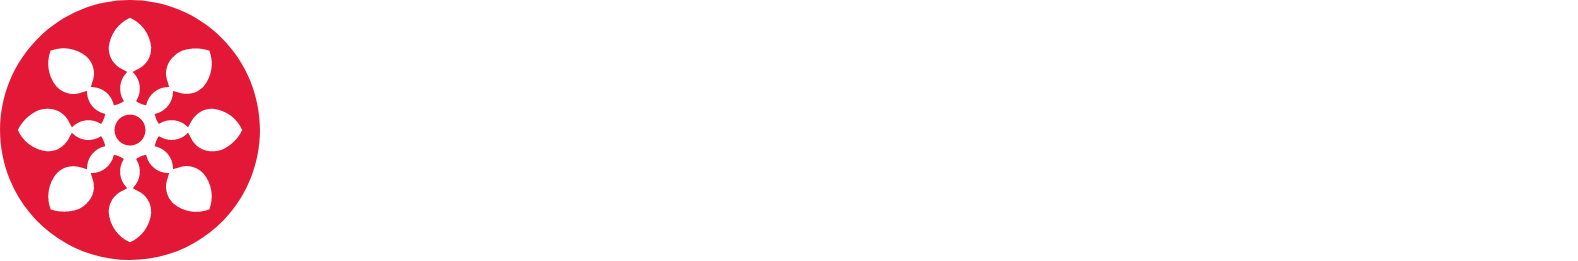 Neowiz Games
 Logo groß für dunkle Hintergründe (transparentes PNG)